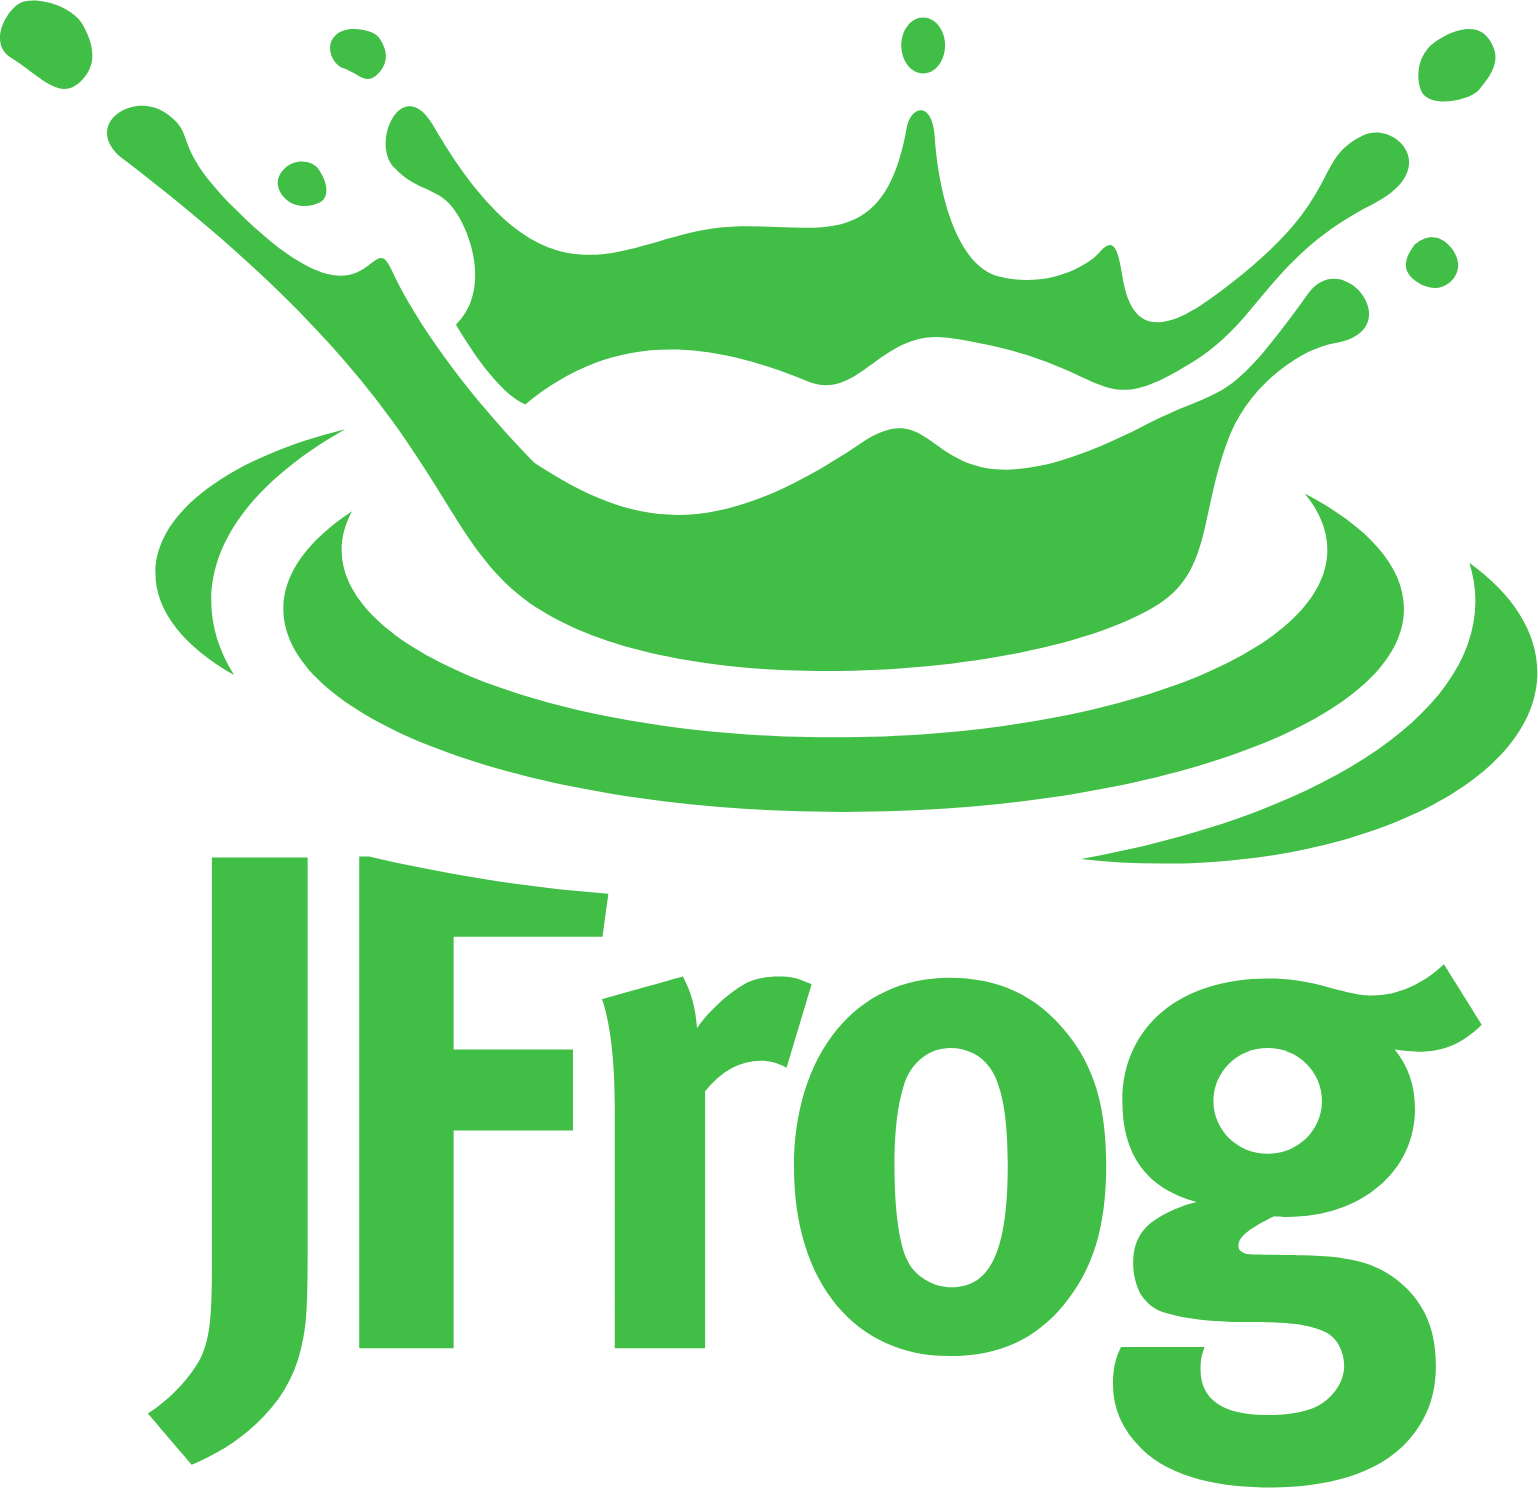 Jfrog logo (transparent PNG)